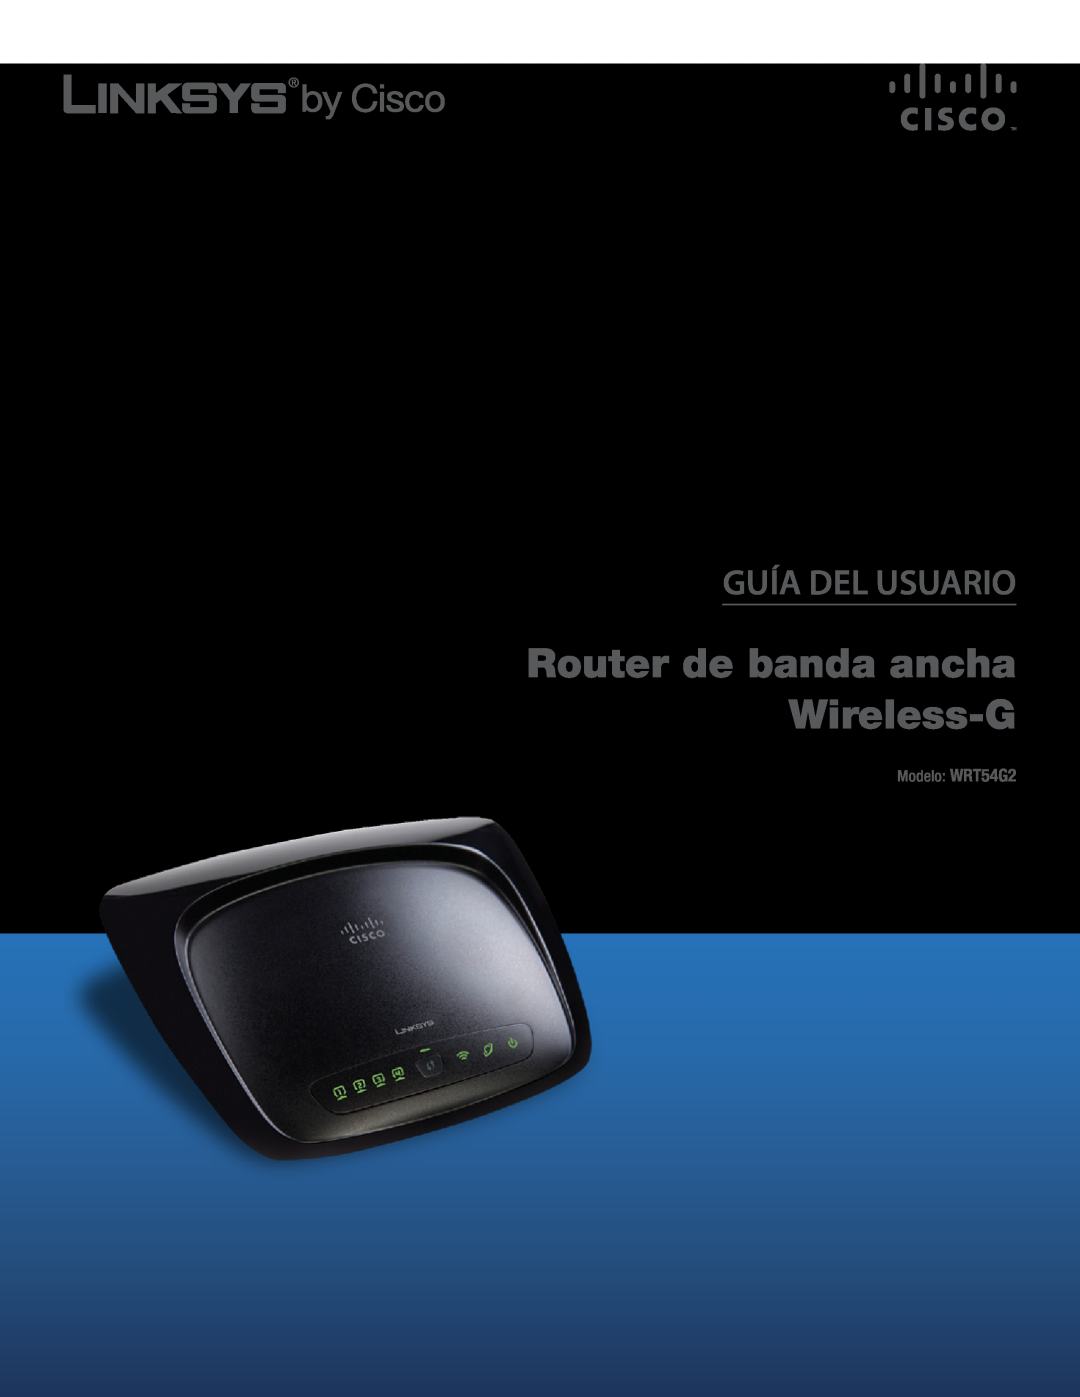 Cisco Systems manual Router de banda ancha Wireless-G, Guía Del Usuario, Modelo WRT54G2 